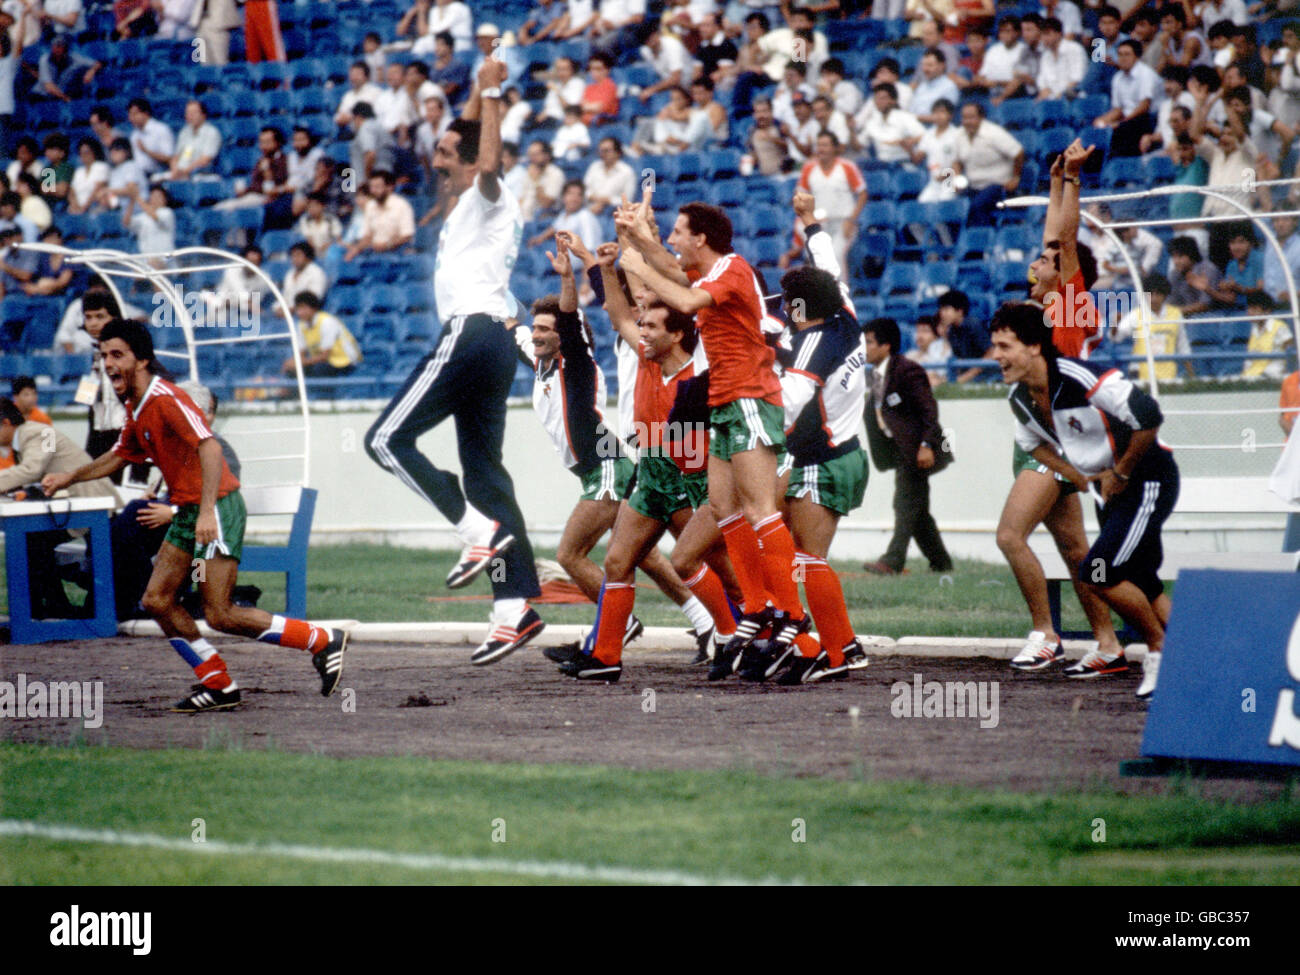 Football - coupe du monde Mexique 86 - Groupe F - Angleterre / Portugal. Les joueurs et les entraîneurs portugais célèbrent leur victoire en 1-0 Banque D'Images